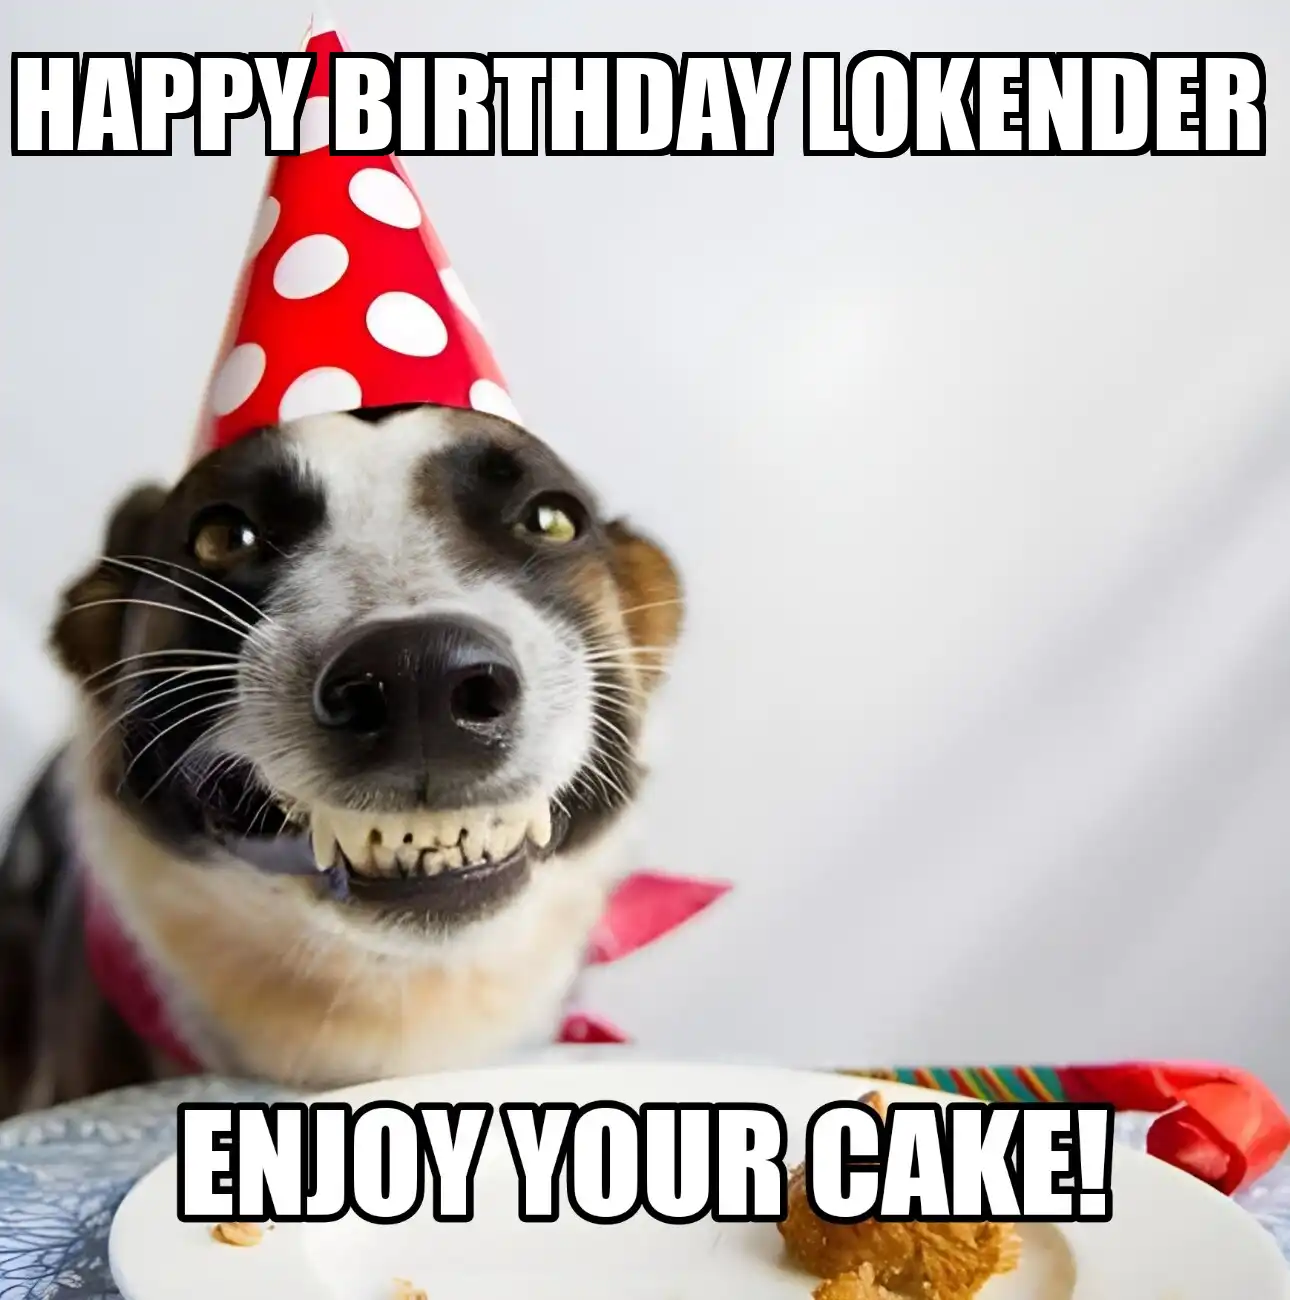 Happy Birthday Lokender Enjoy Your Cake Dog Meme